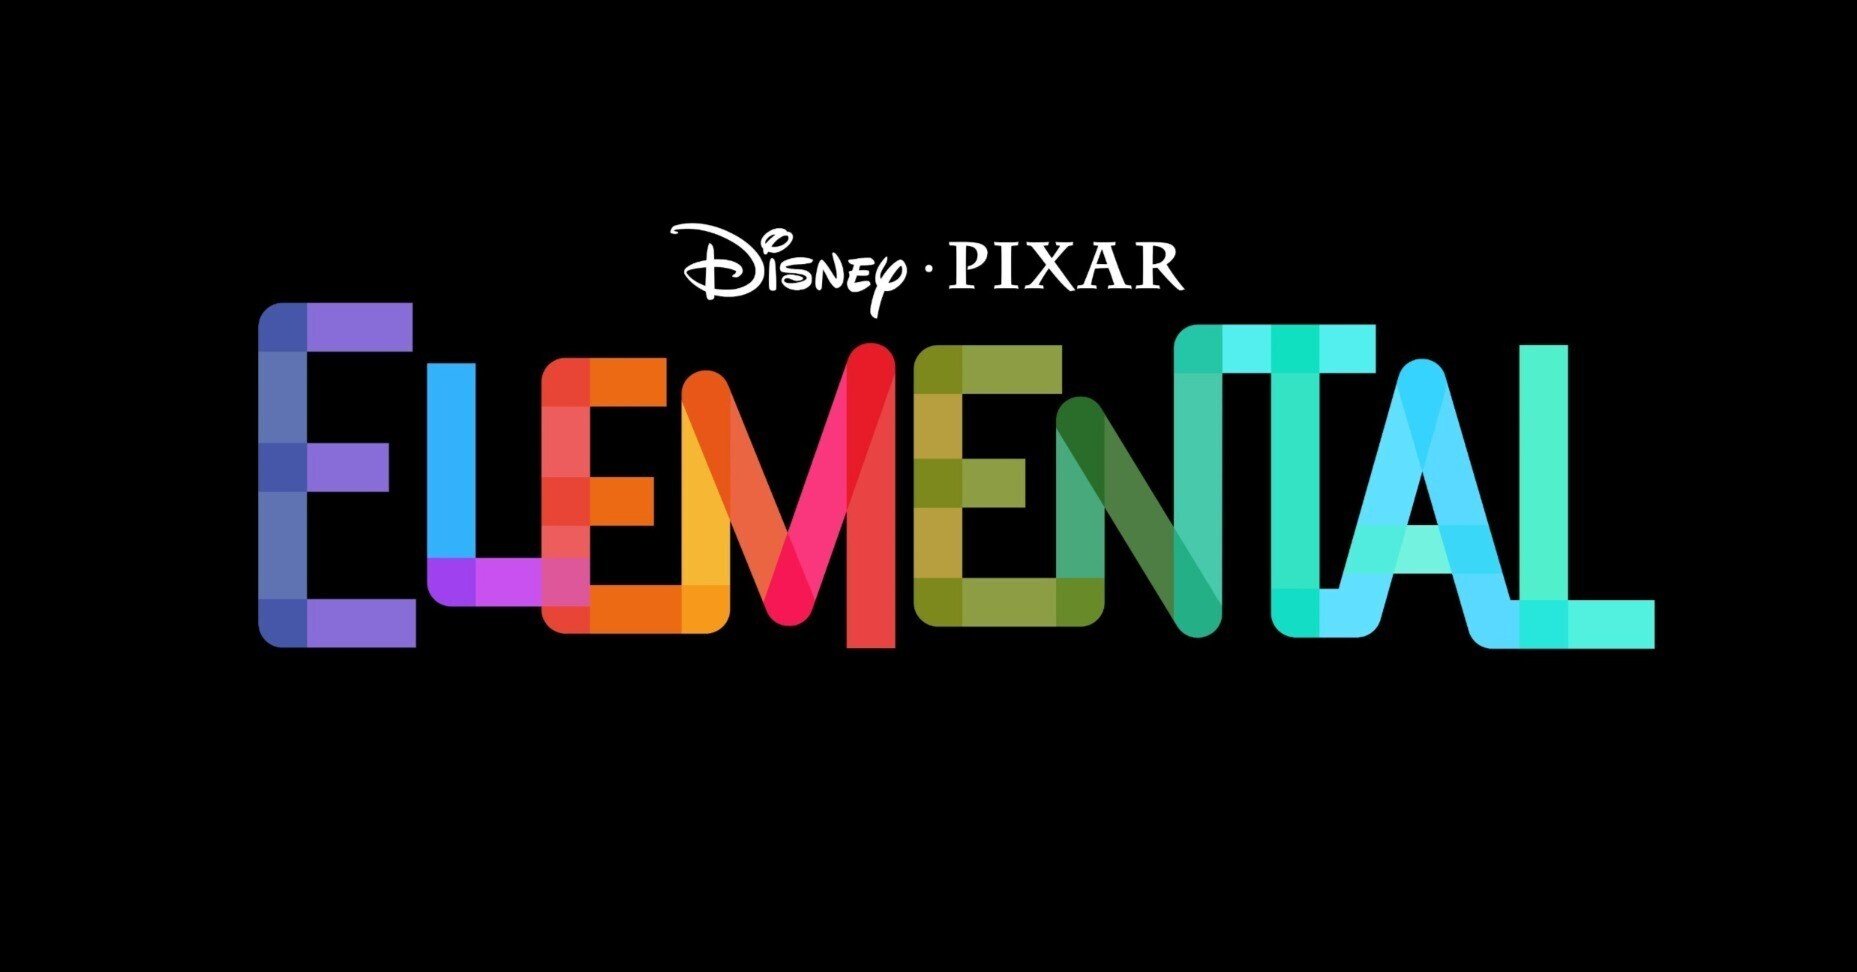 新作映画情報 23年pixar最新作は Elemental ロゴとイメージビジュアル解禁 ネジムラ アニメ映画ライター Note